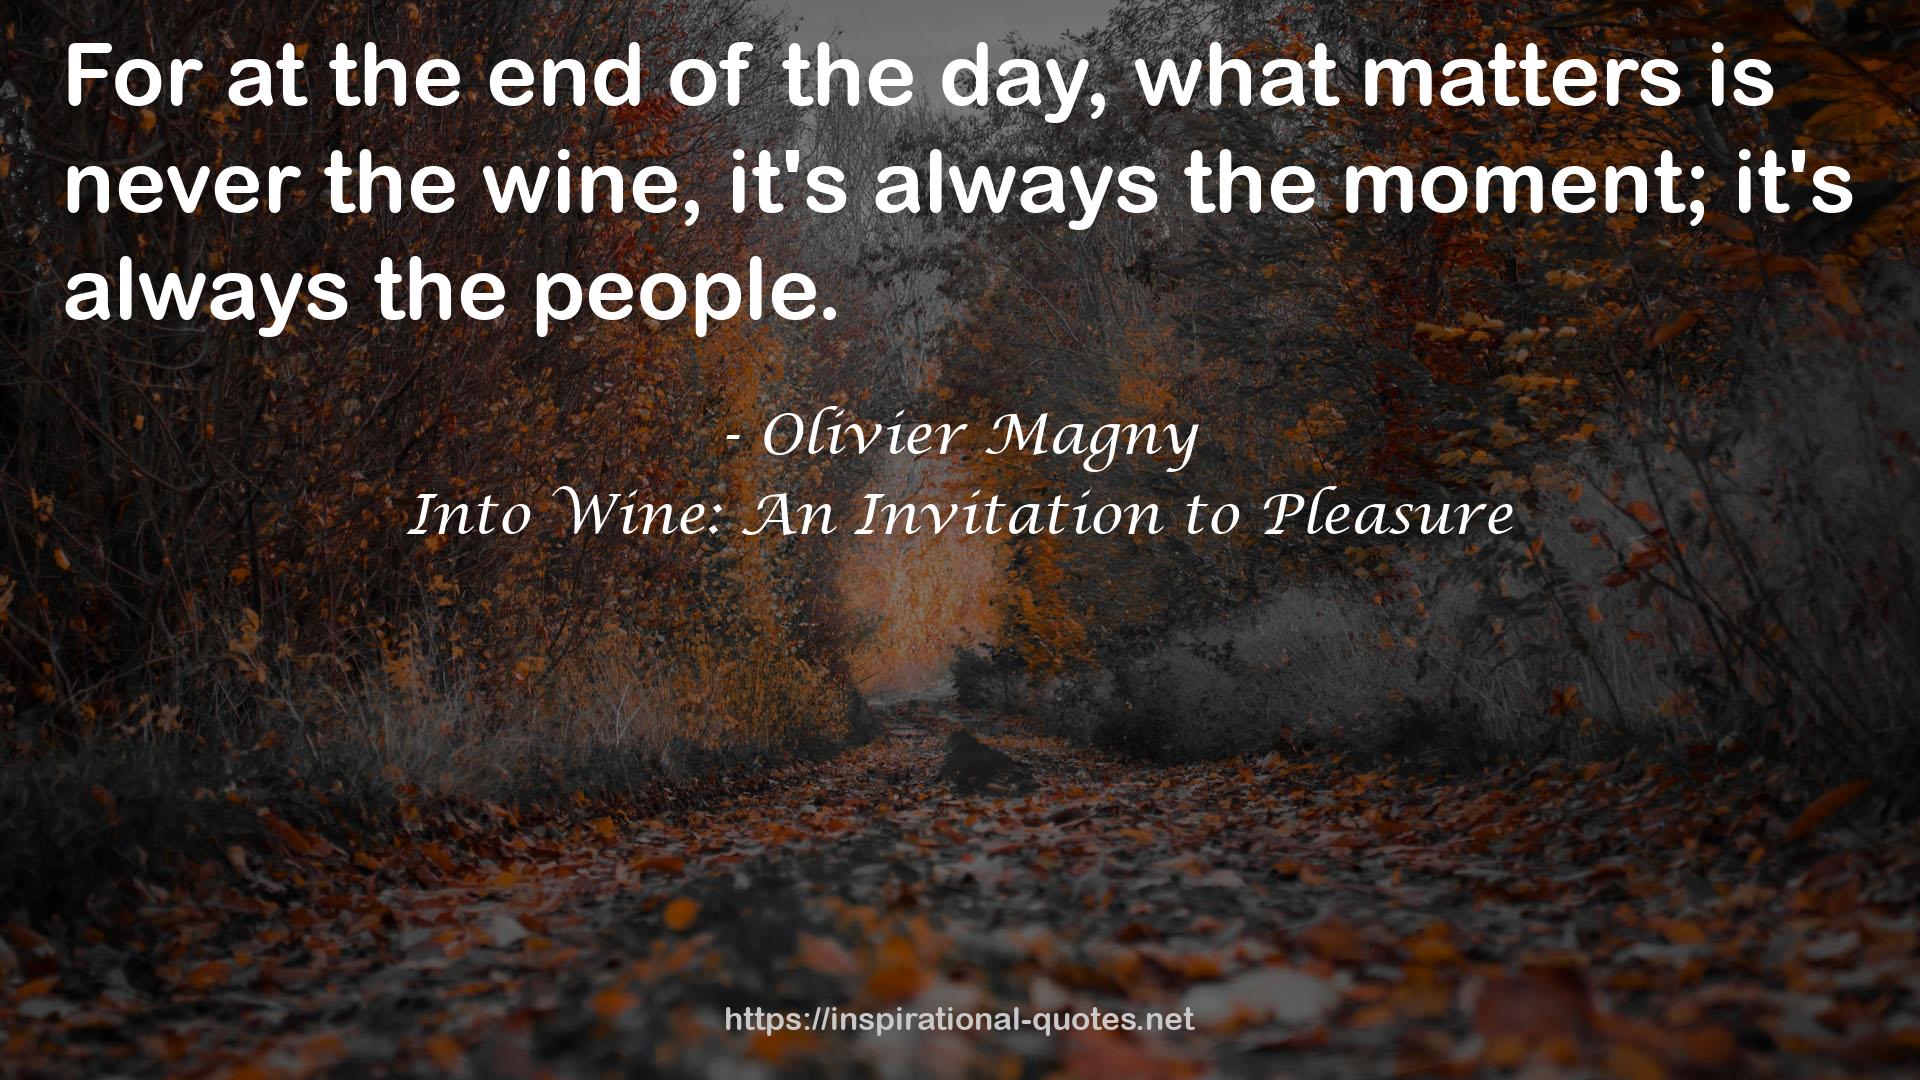 Into Wine: An Invitation to Pleasure QUOTES